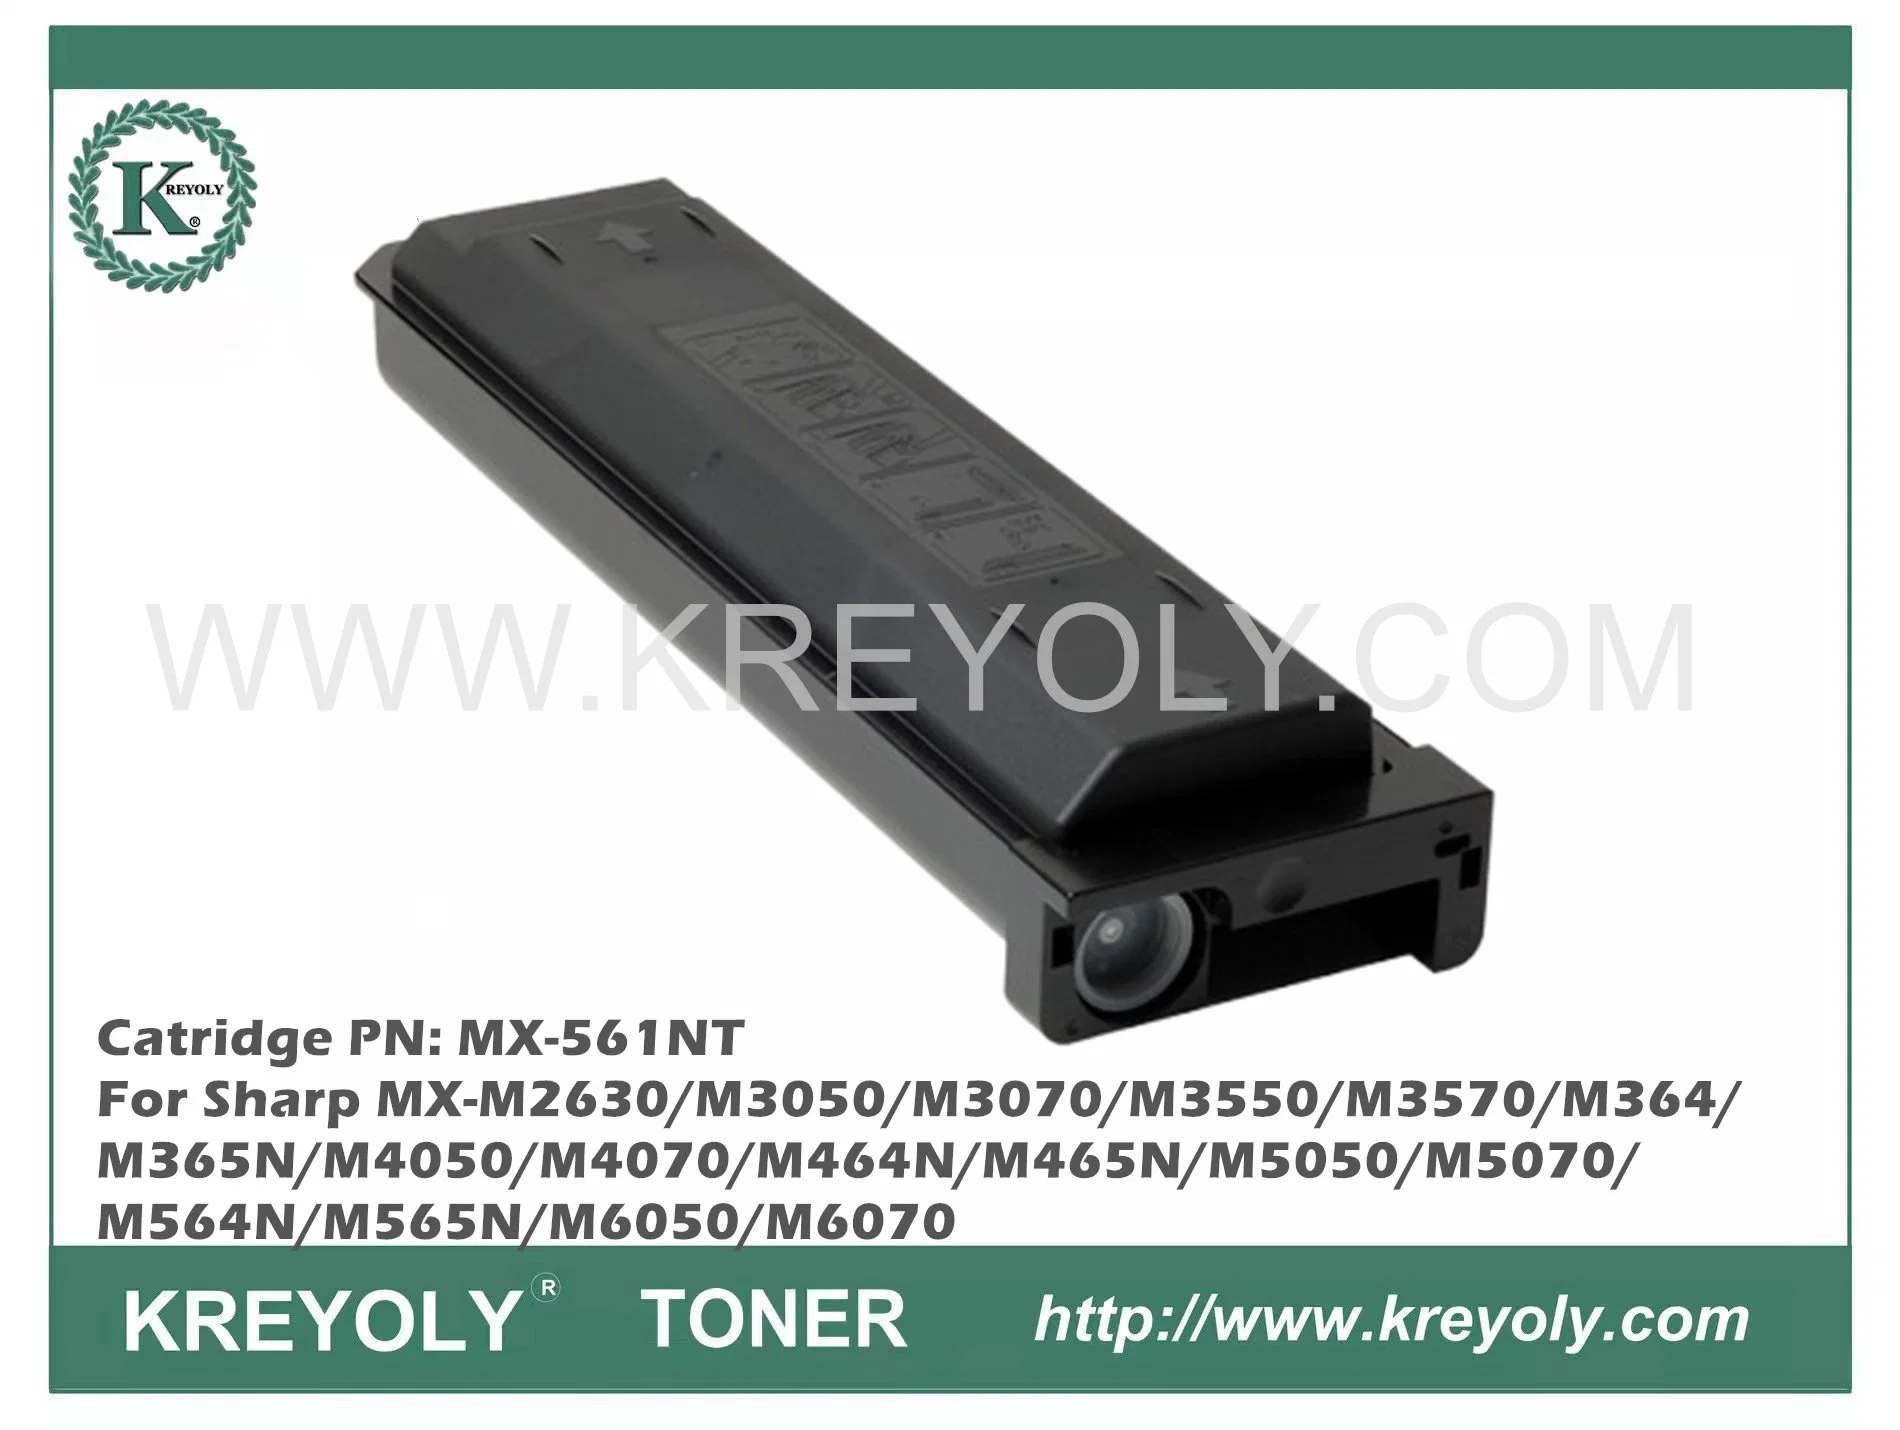 Toner Cartridge MX-561NT for Sharp MX-M3070/M3570/M4070/M5070/M6070/MX-M2651/M3051/M3071/M3551/M3571/M4051/M4071/M5051/M5071/M6051/M6071